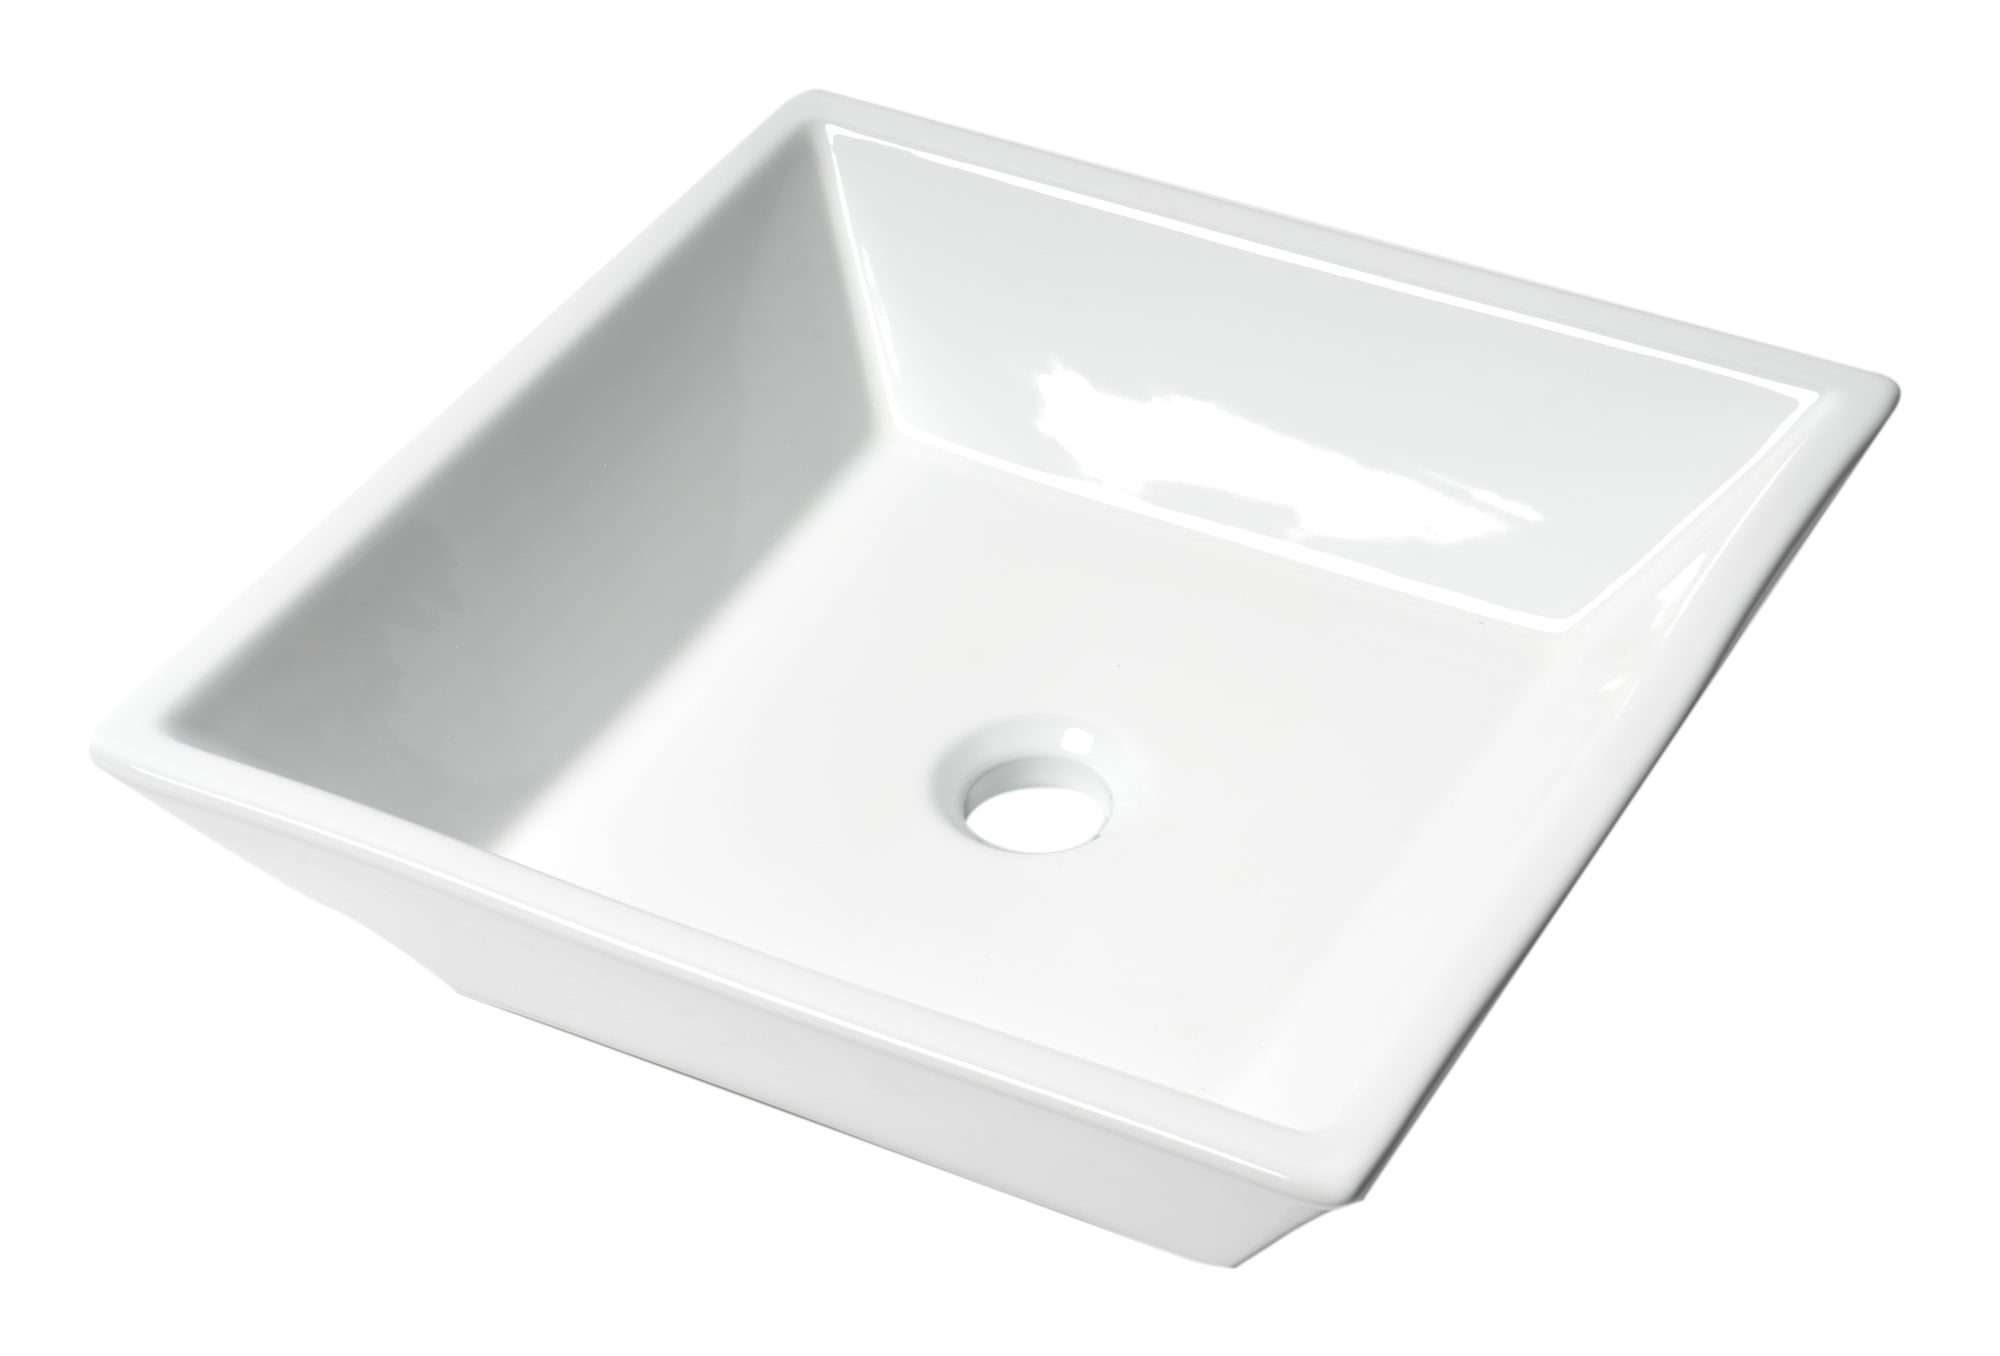 Picture of ALFI Brand ABC912 17 in. Square Above Mount Ceramic Sink, White